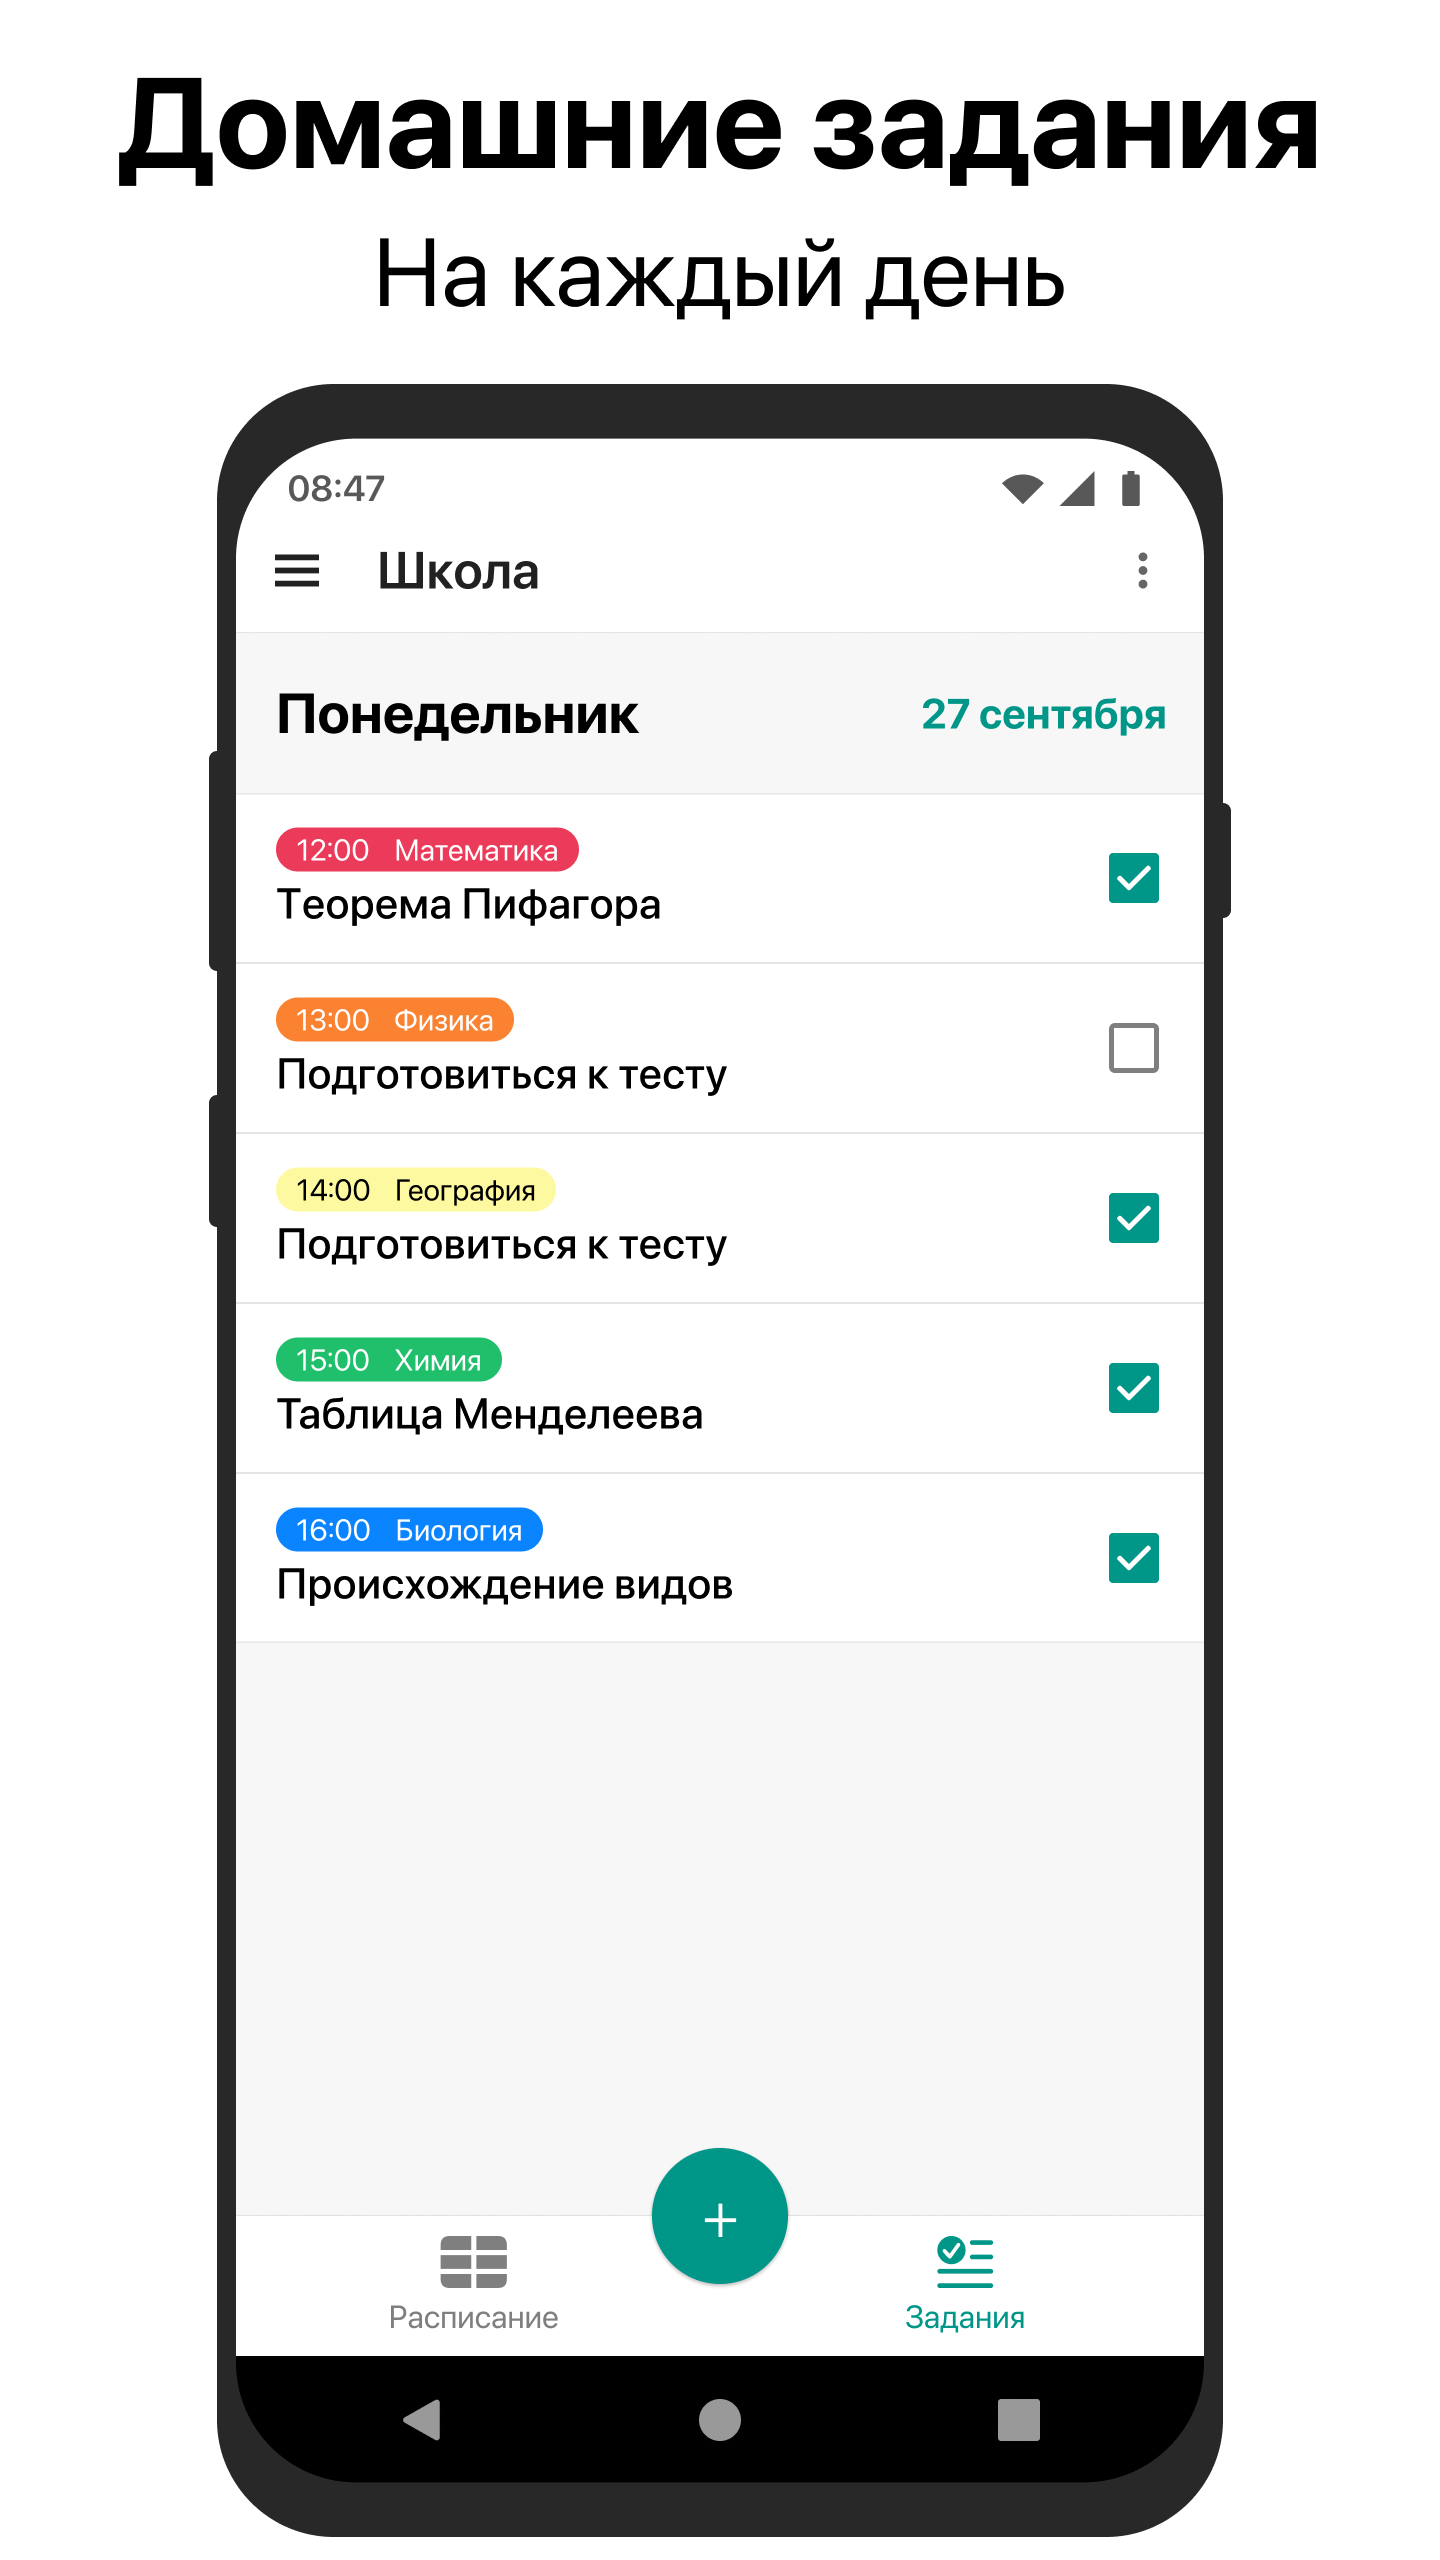 Приложение афиша. Мобильное приложение расписание занятий. Афиша скриншота.